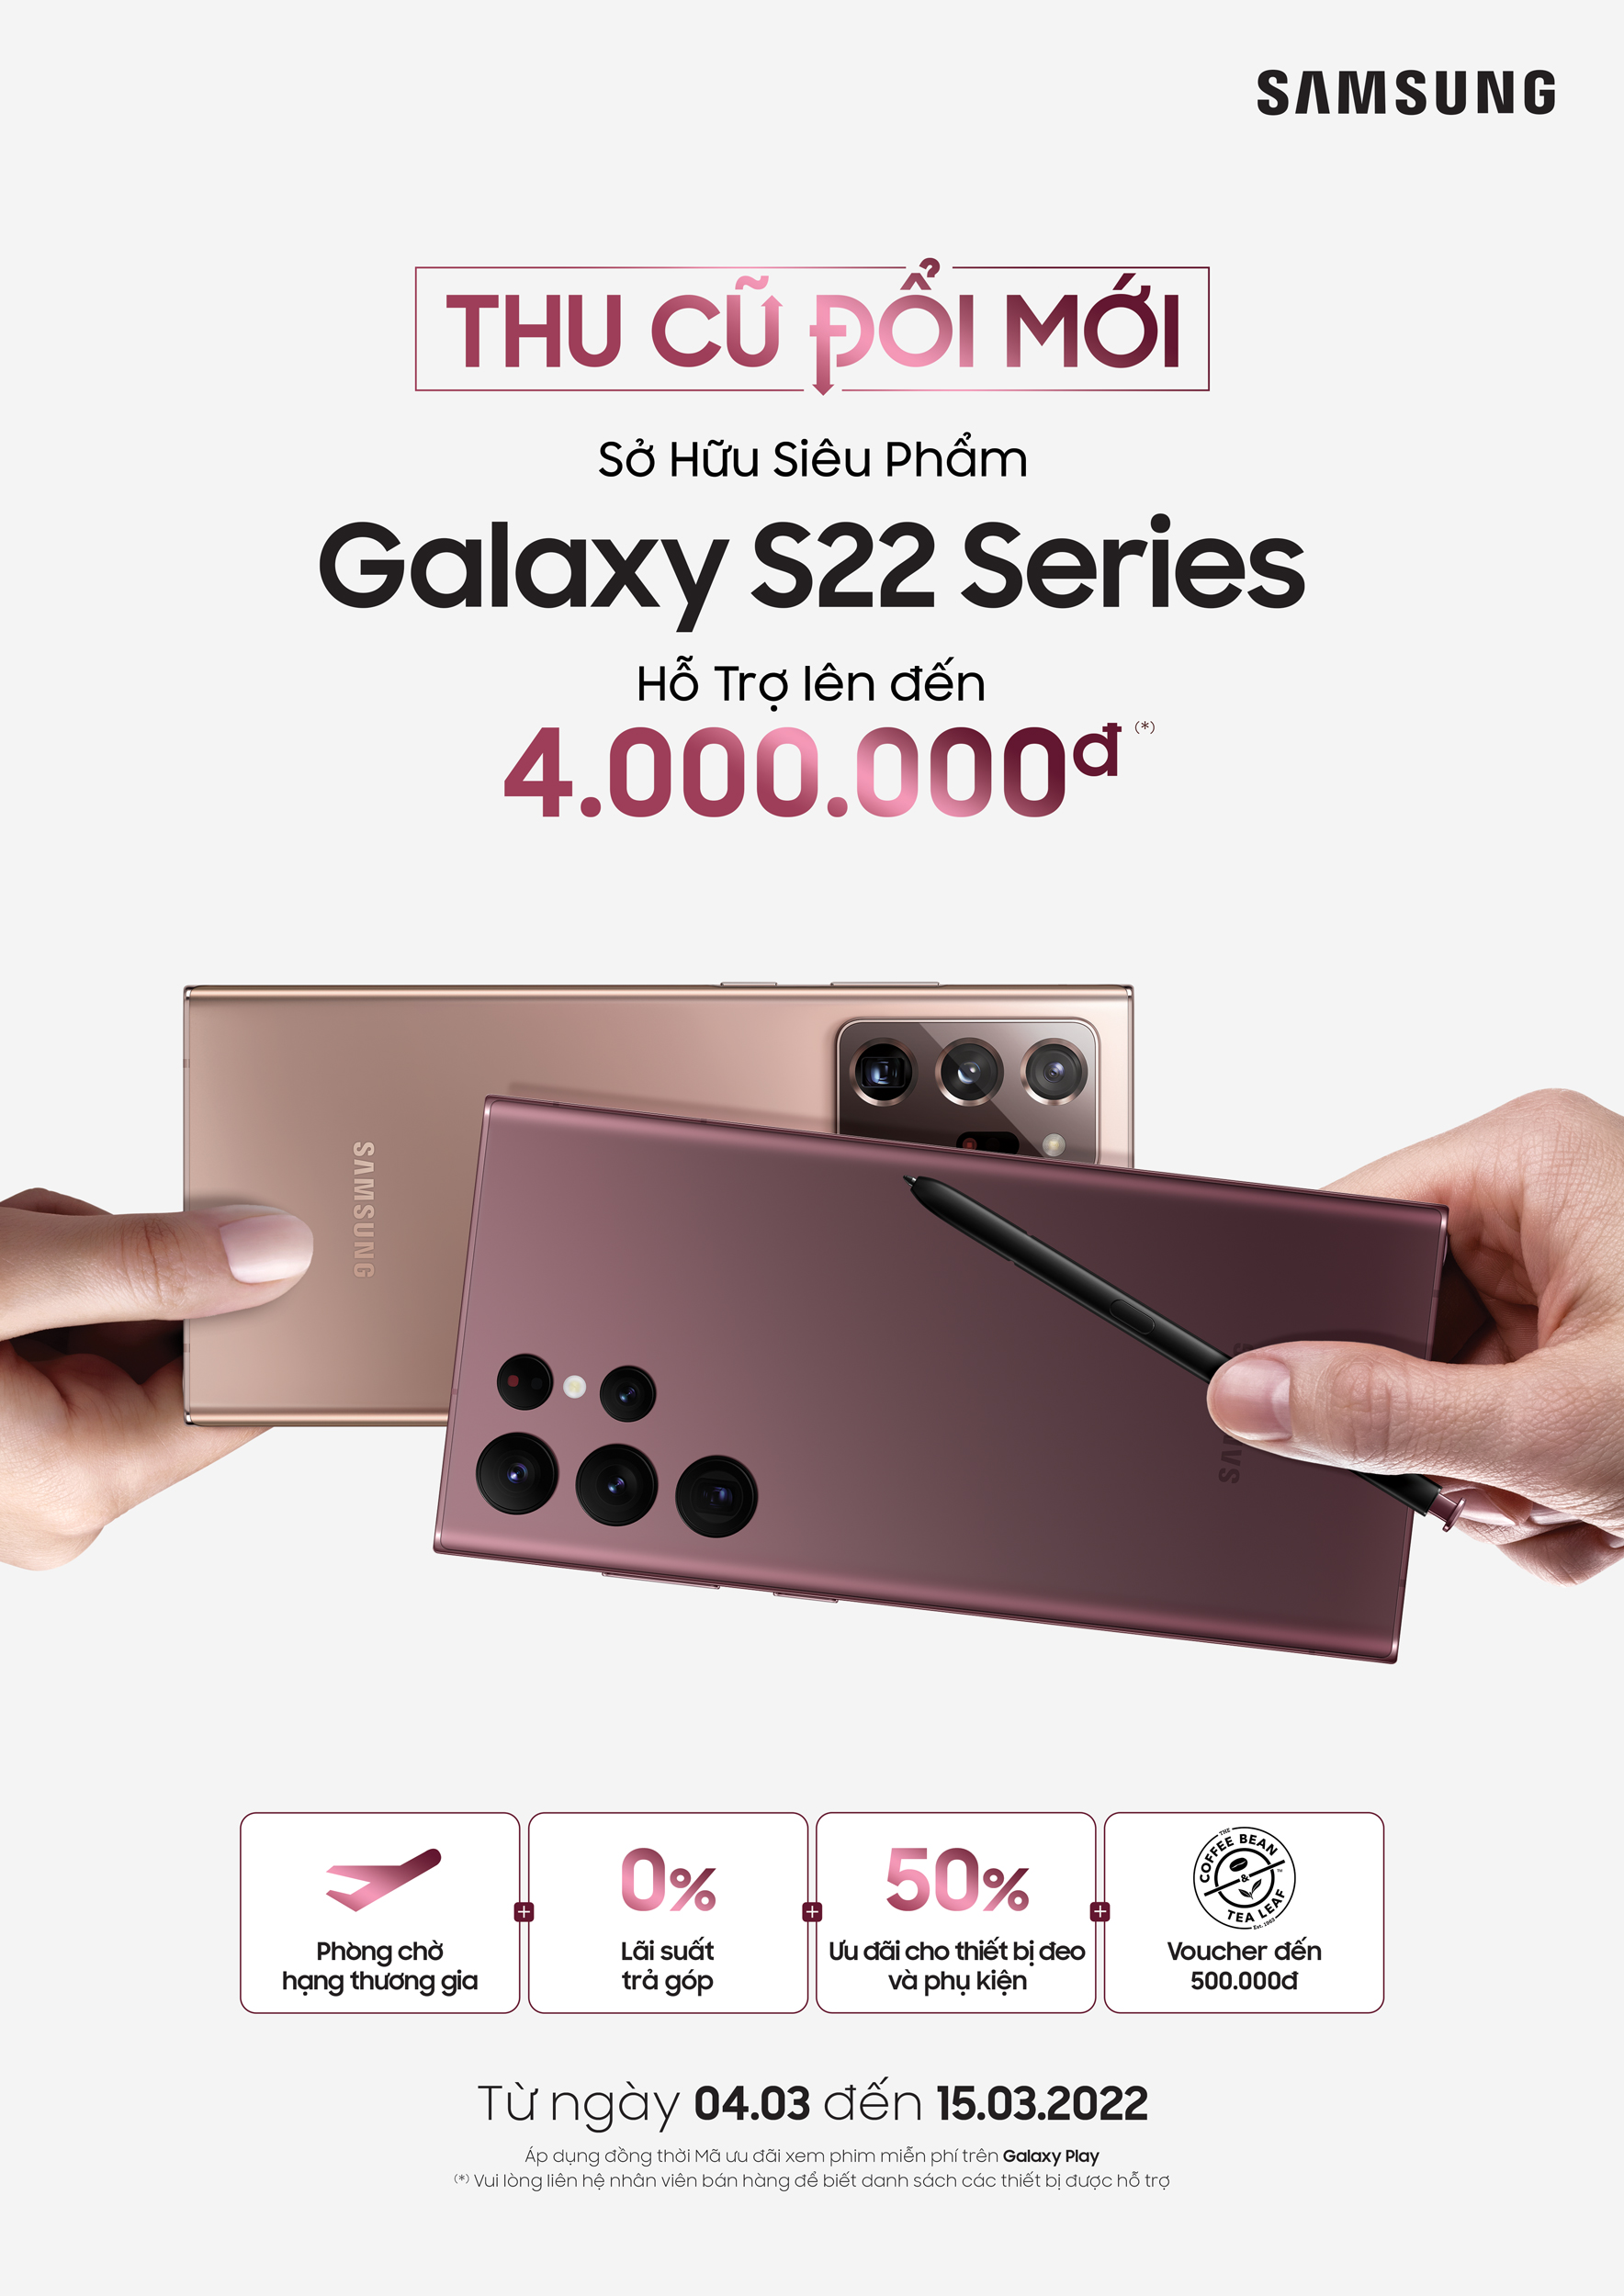 Galaxy S22 series ghi nhận lượng đặt hàng kỷ lục tại Việt Nam